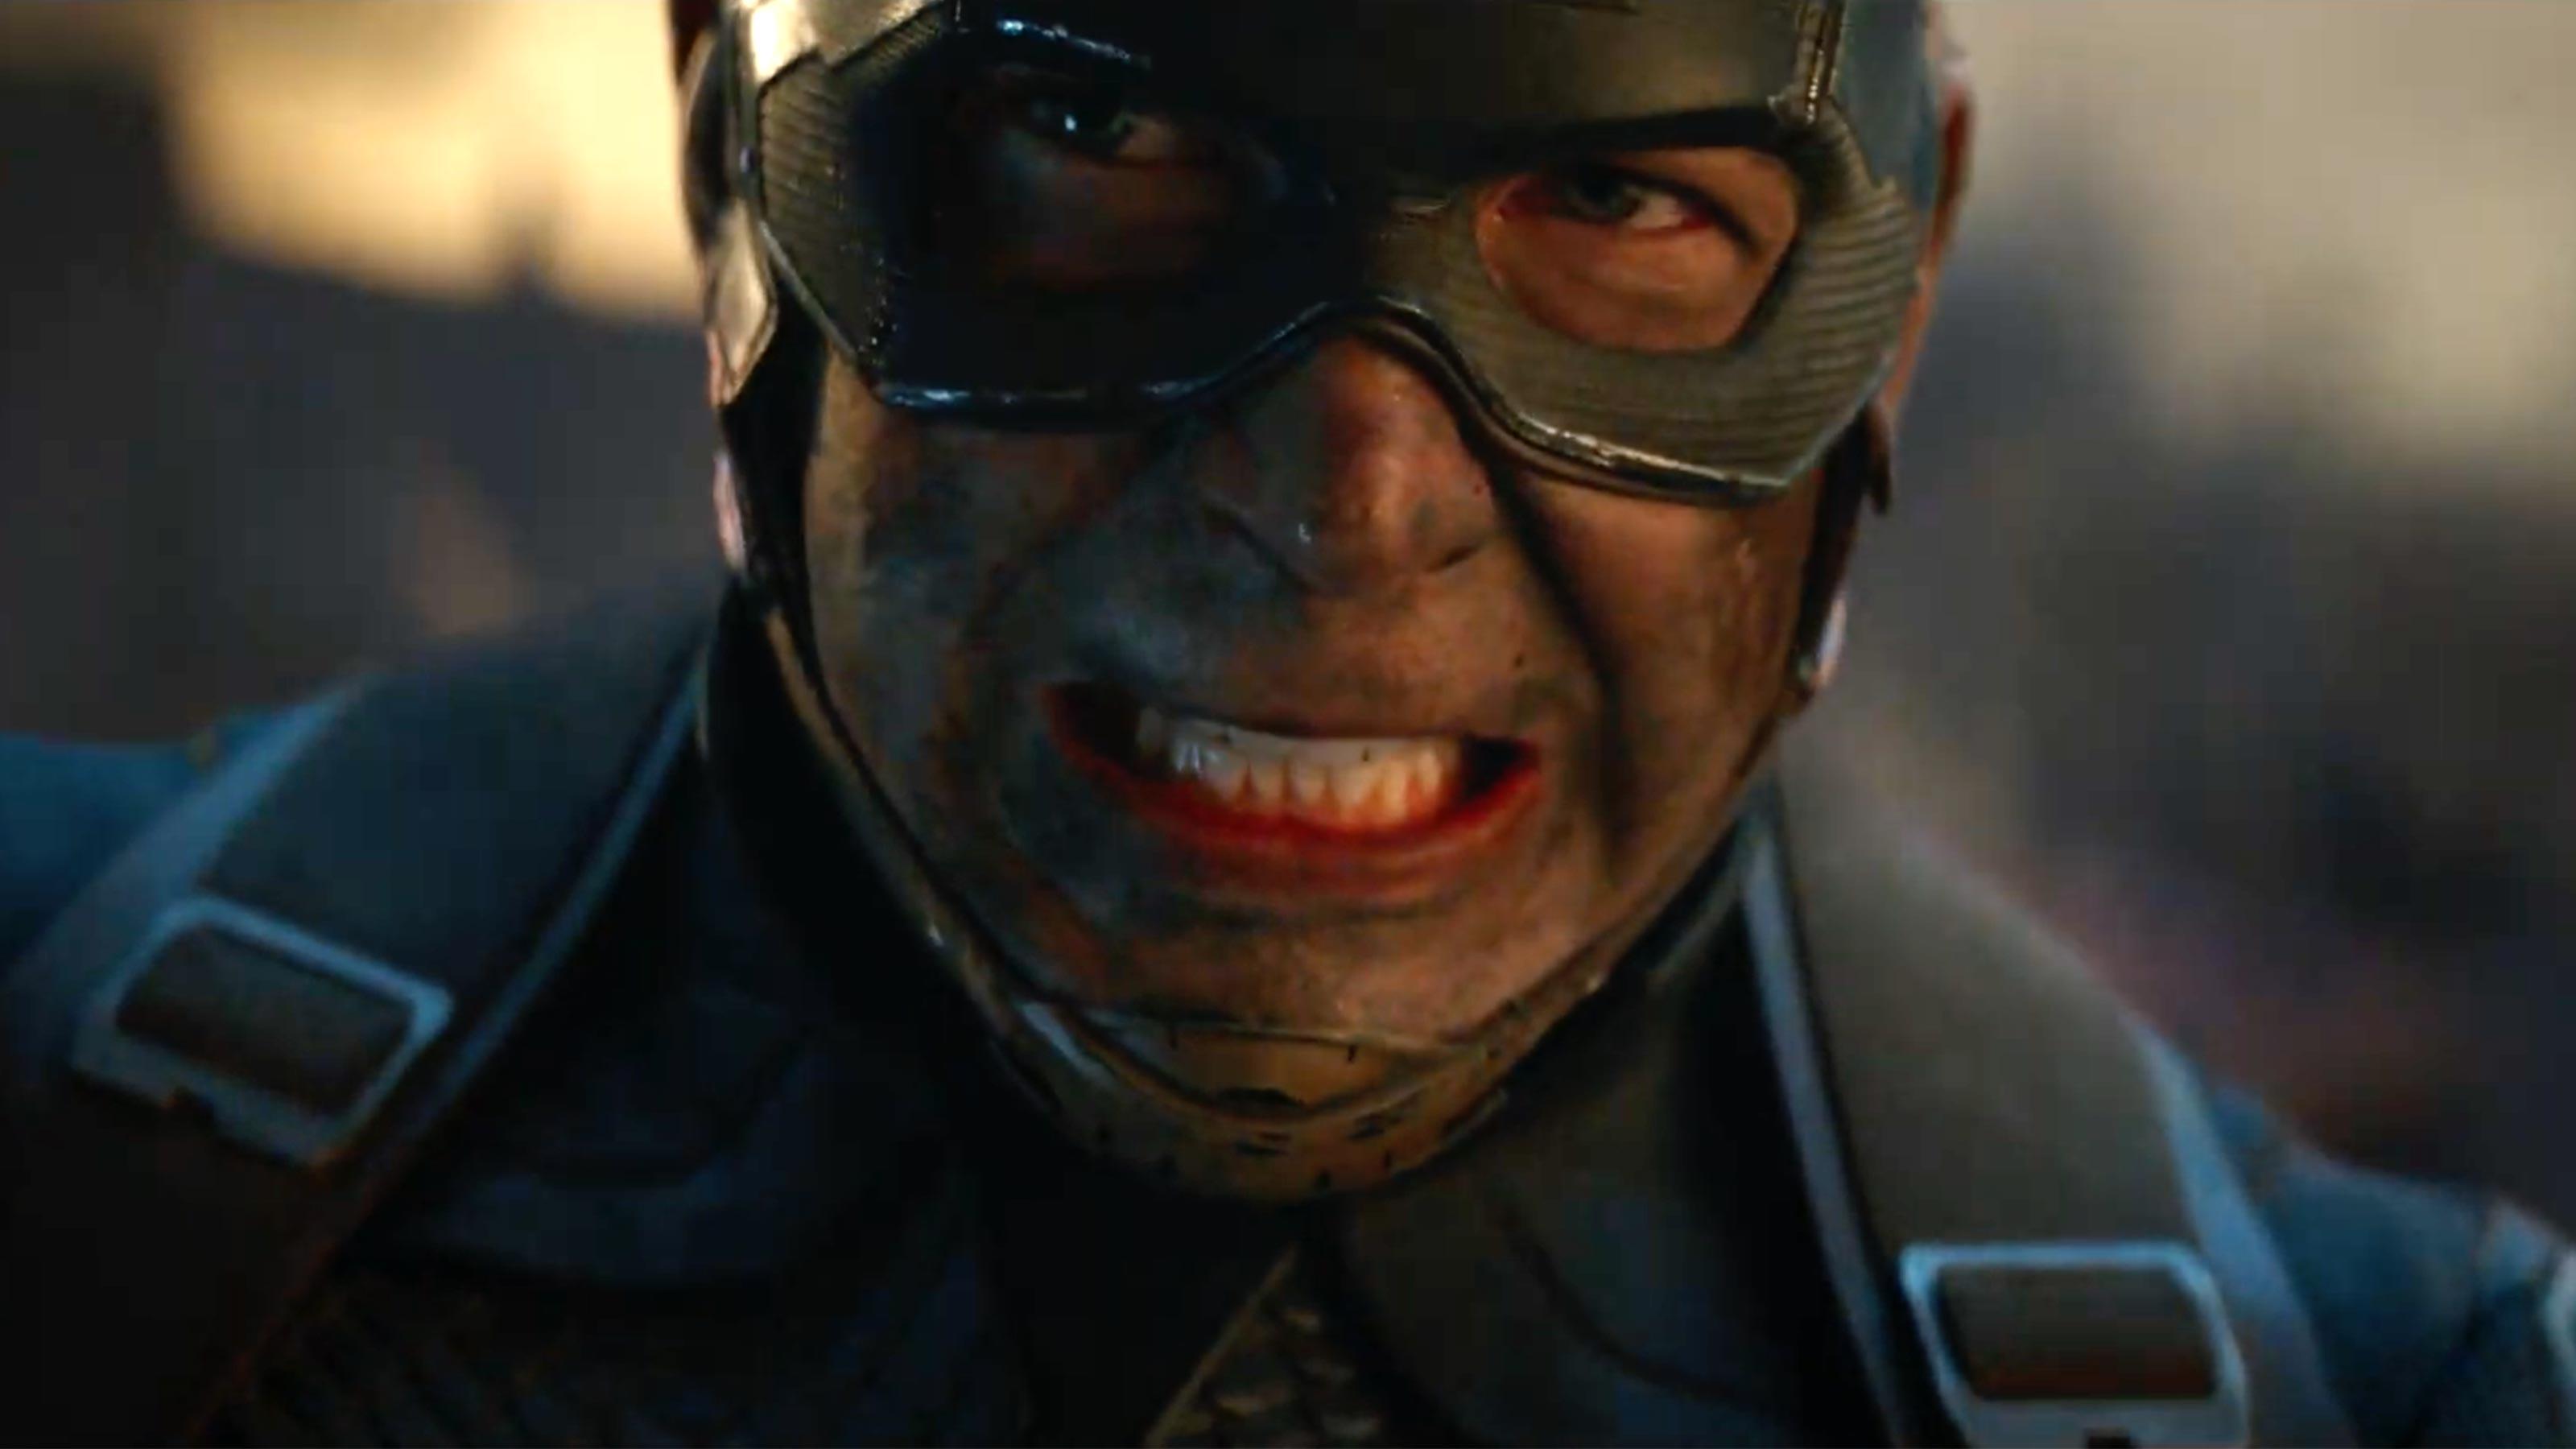 Avengers Endgame spoilers: Old Captain America gives Steve